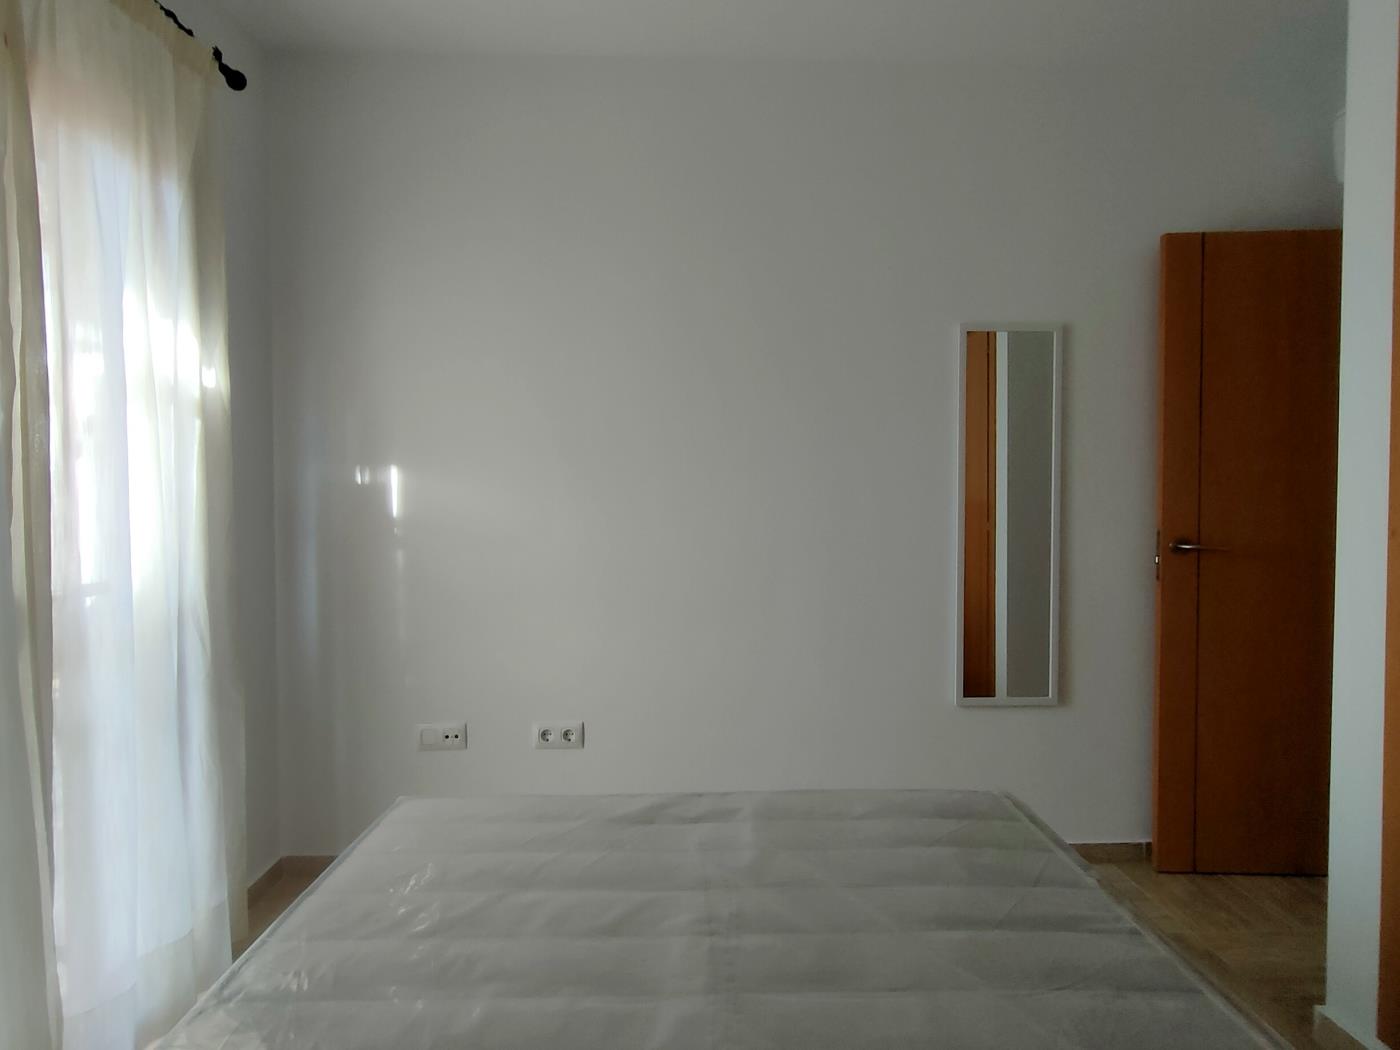 Ref. A4. Apartamento de dos dormitorios en planta primera en Chiclana de la frontera